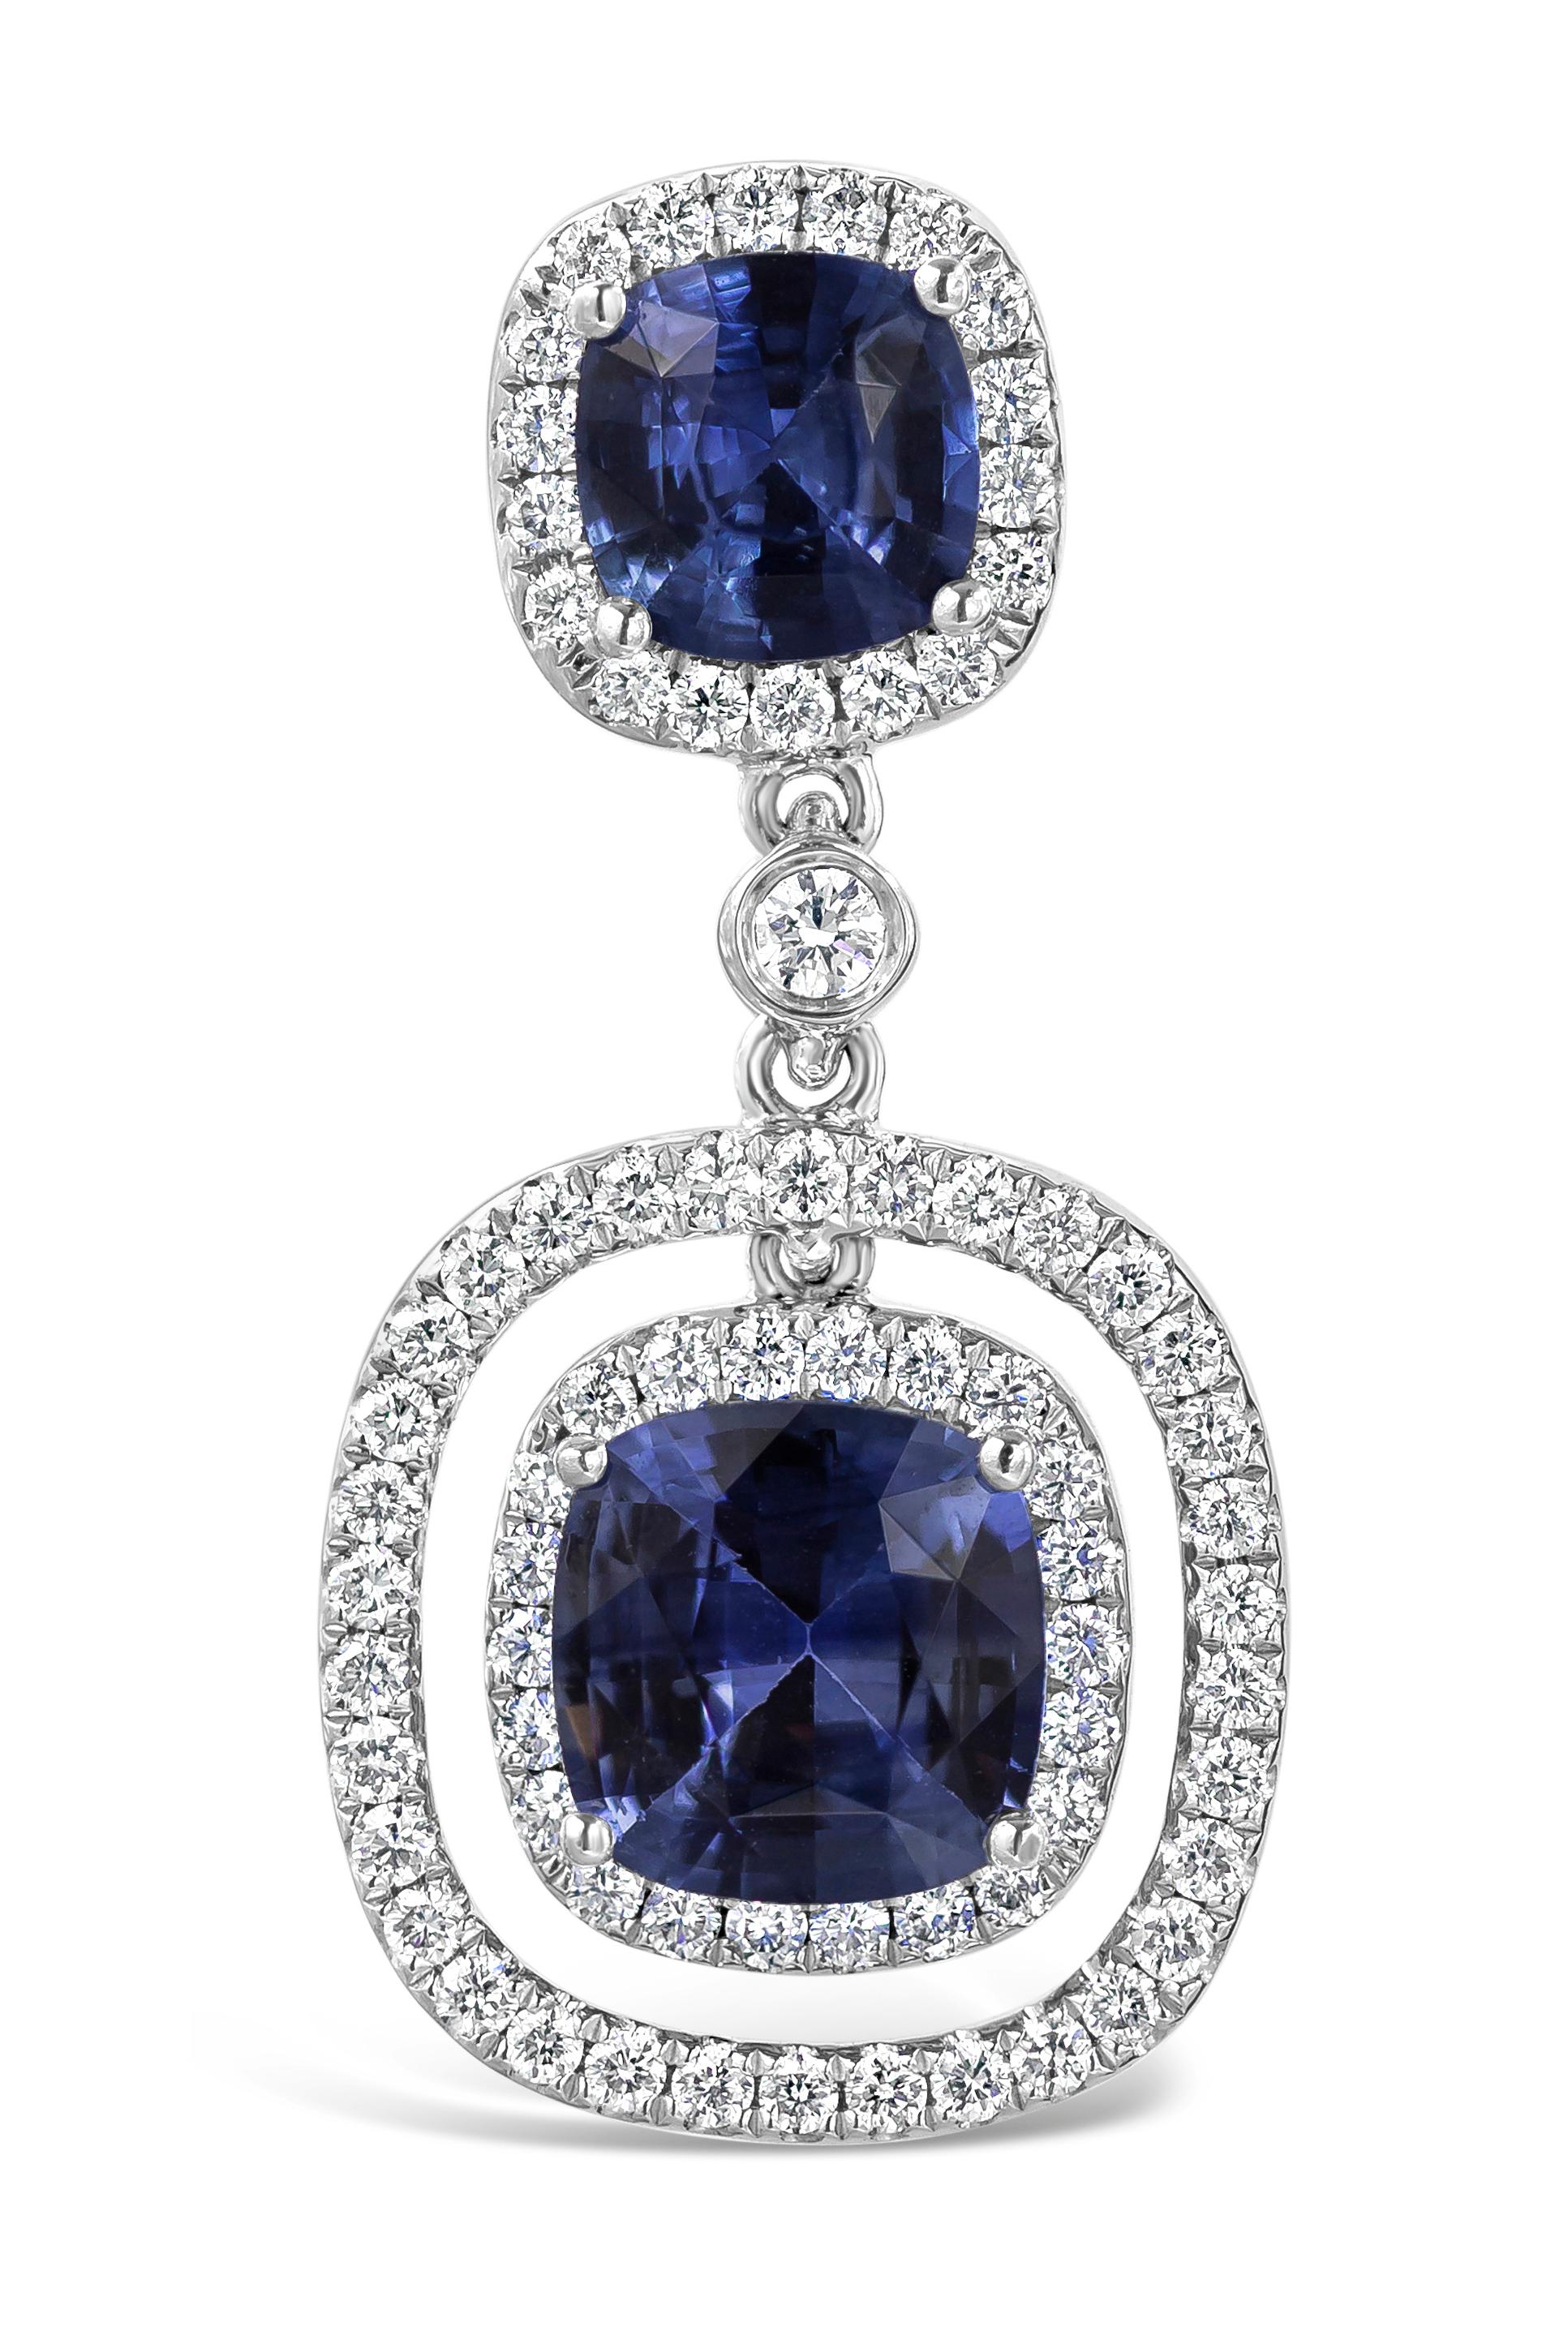 Superbe paire de boucles d'oreilles pendantes ornées de quatre saphirs bleus taillés en coussin et sertis en quatre points, entourés d'un halo de diamants ronds brillants. Les saphirs bleus pèsent 3,96 carats au total et les diamants blancs 0,76